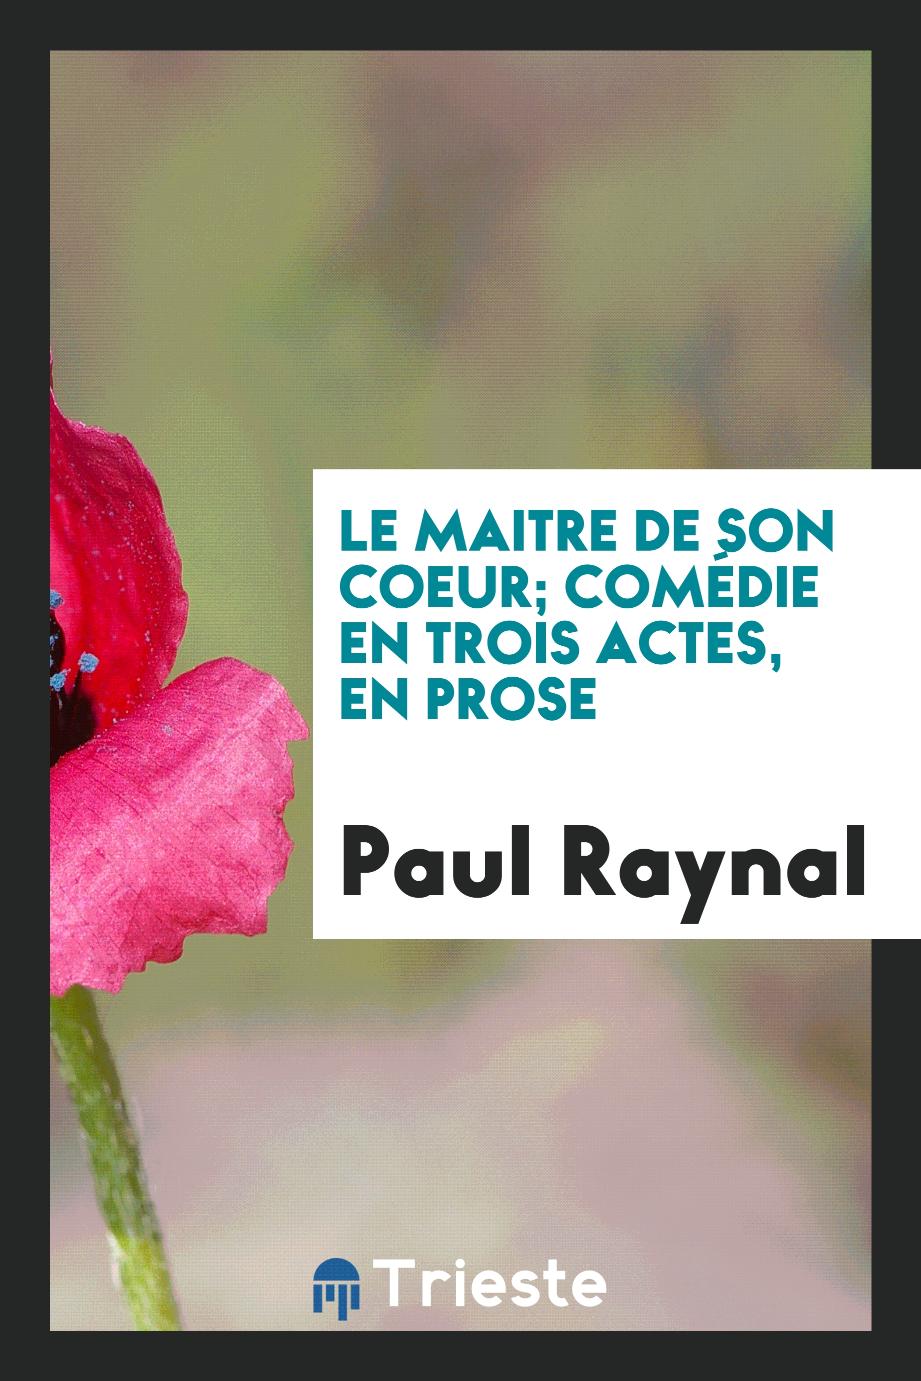 Paul Raynal - Le maitre de son coeur; comédie en trois actes, en prose